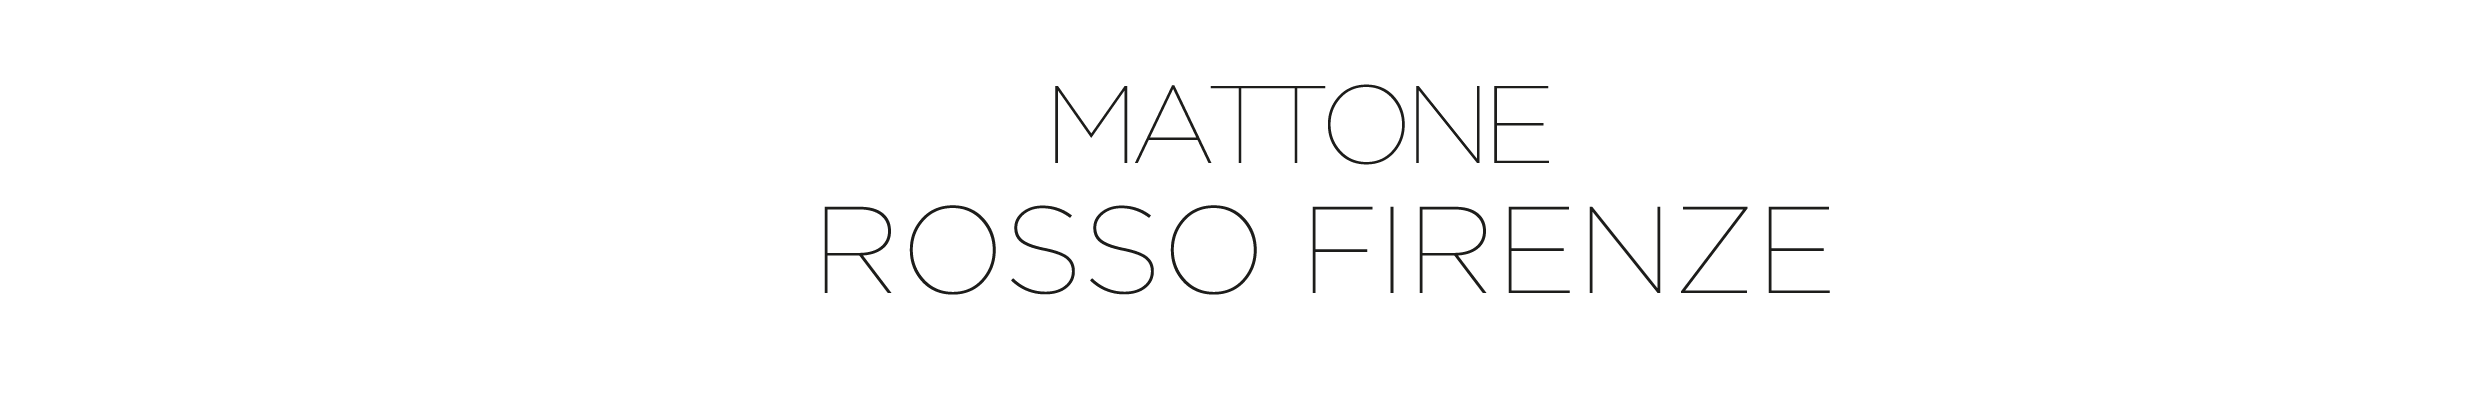 Matt ROSSO FIRE-46-46-46-45